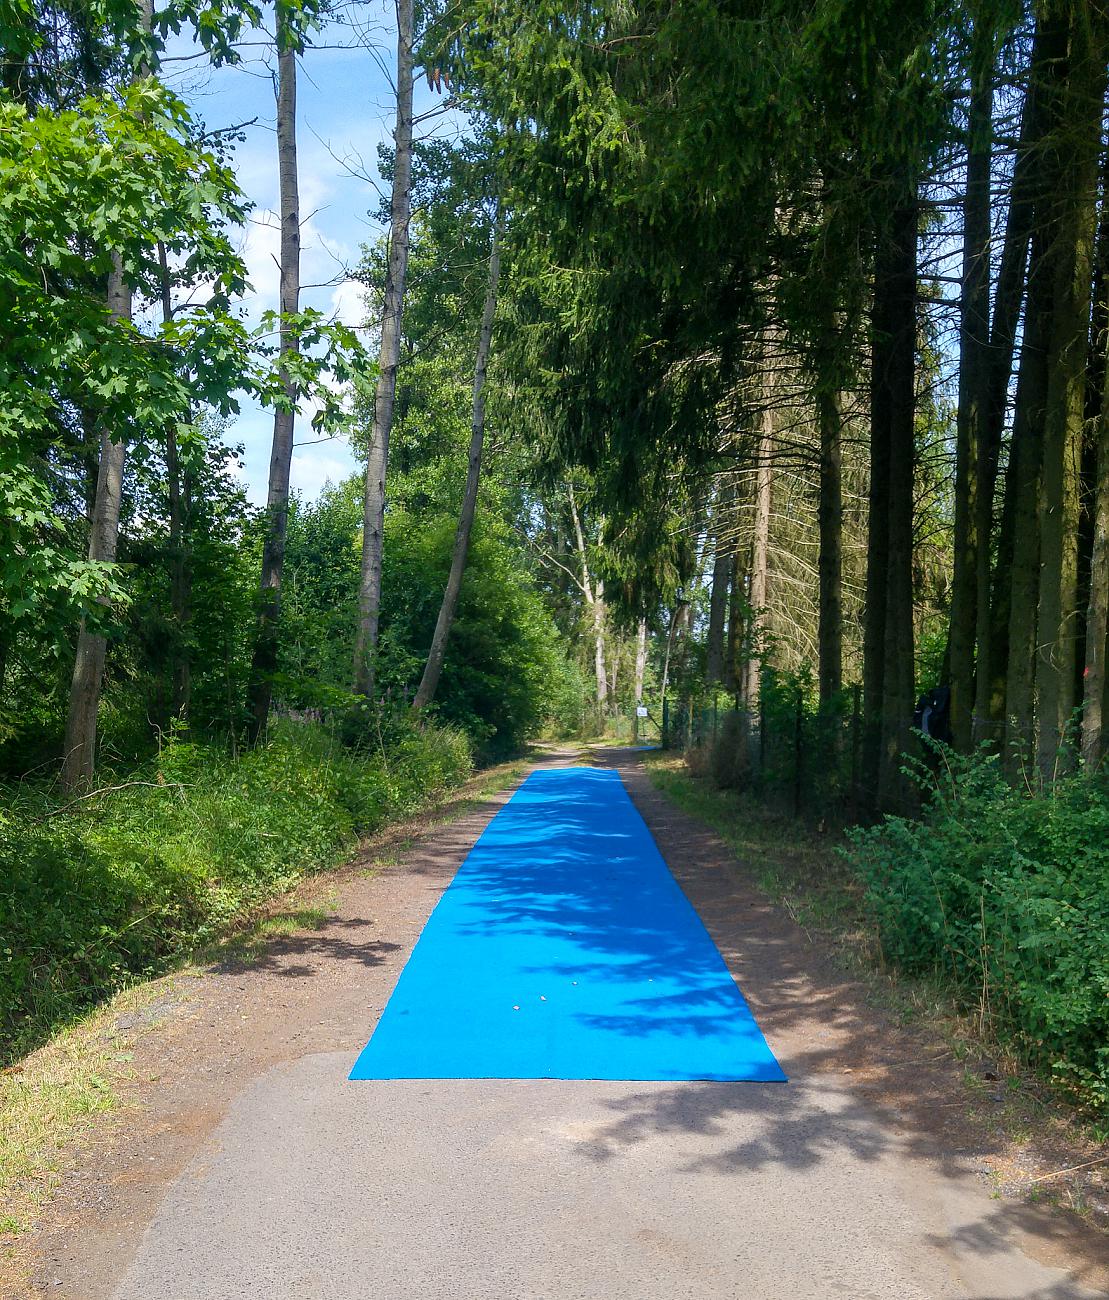 Foto: Martin Zehrer - Ein blauer Teppich im Wald... Einlaufzone für die Athleten... 